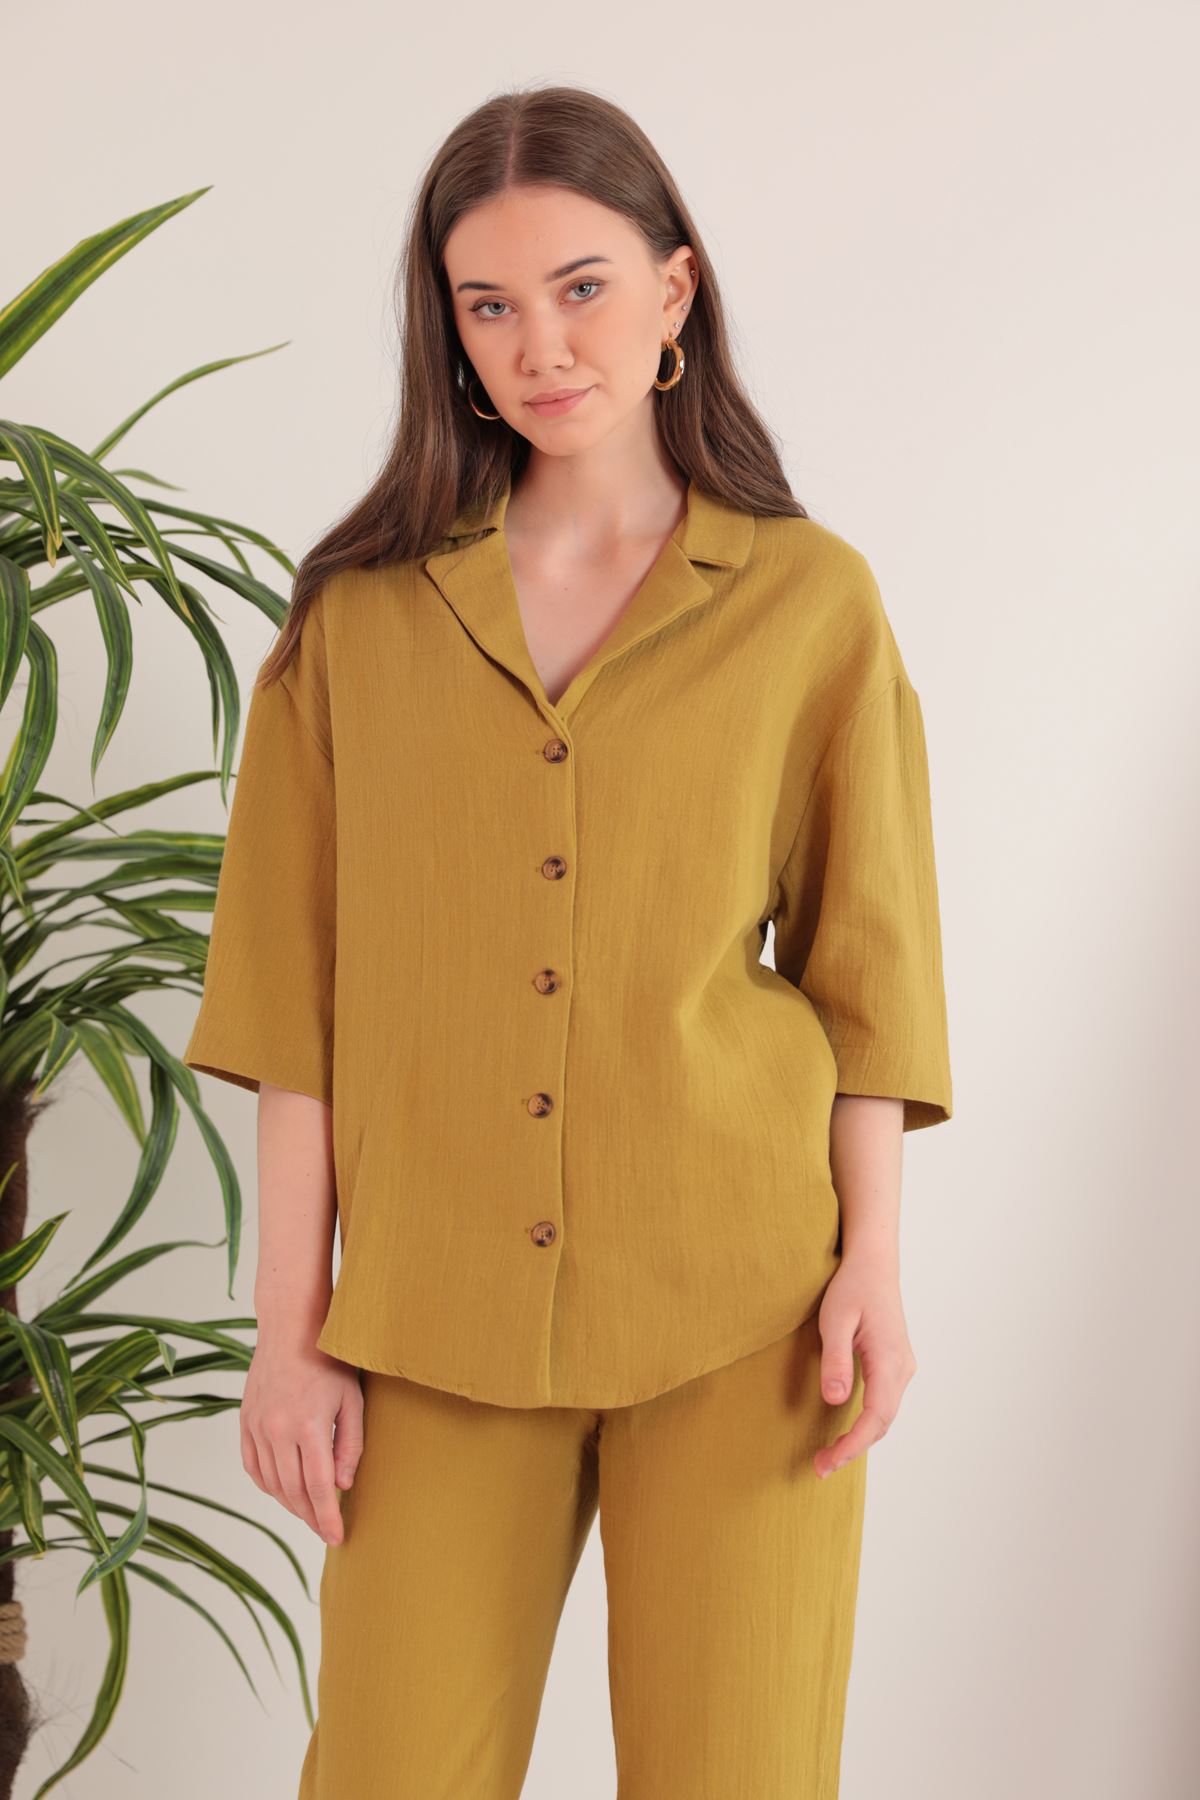 Женская рубашка с воротником из муслиновой ткани-горчичный